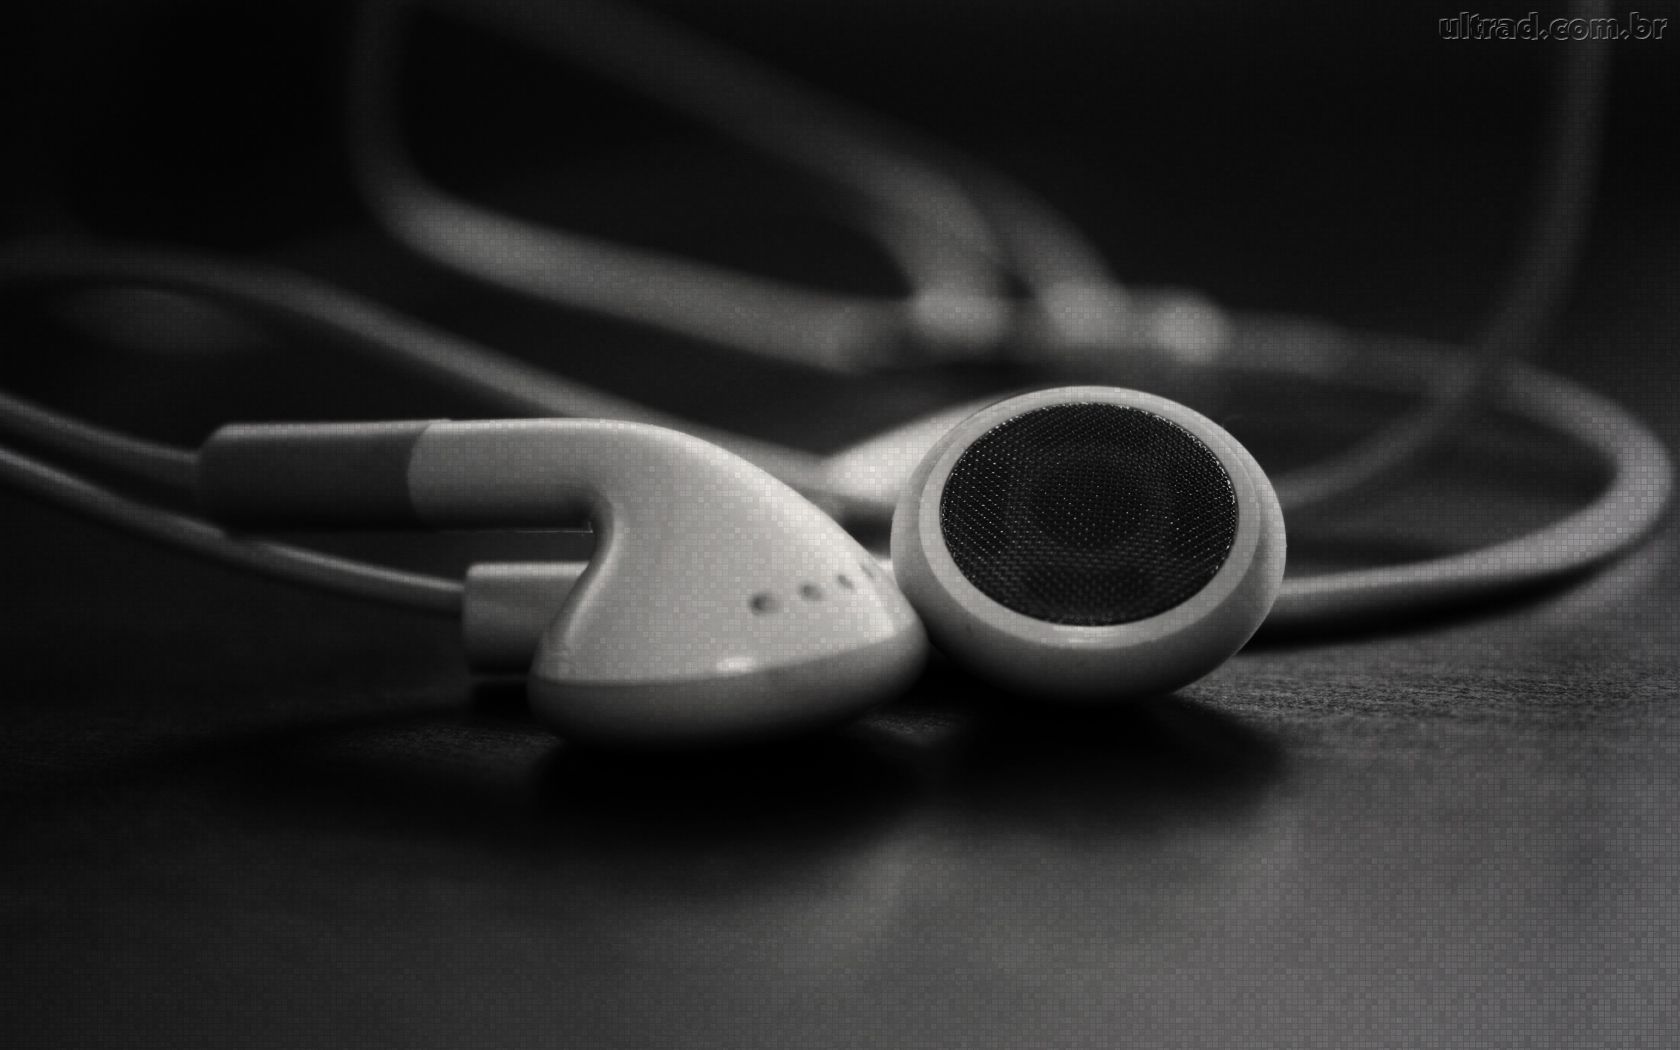  Como aumentar o grave dos fones de ouvido